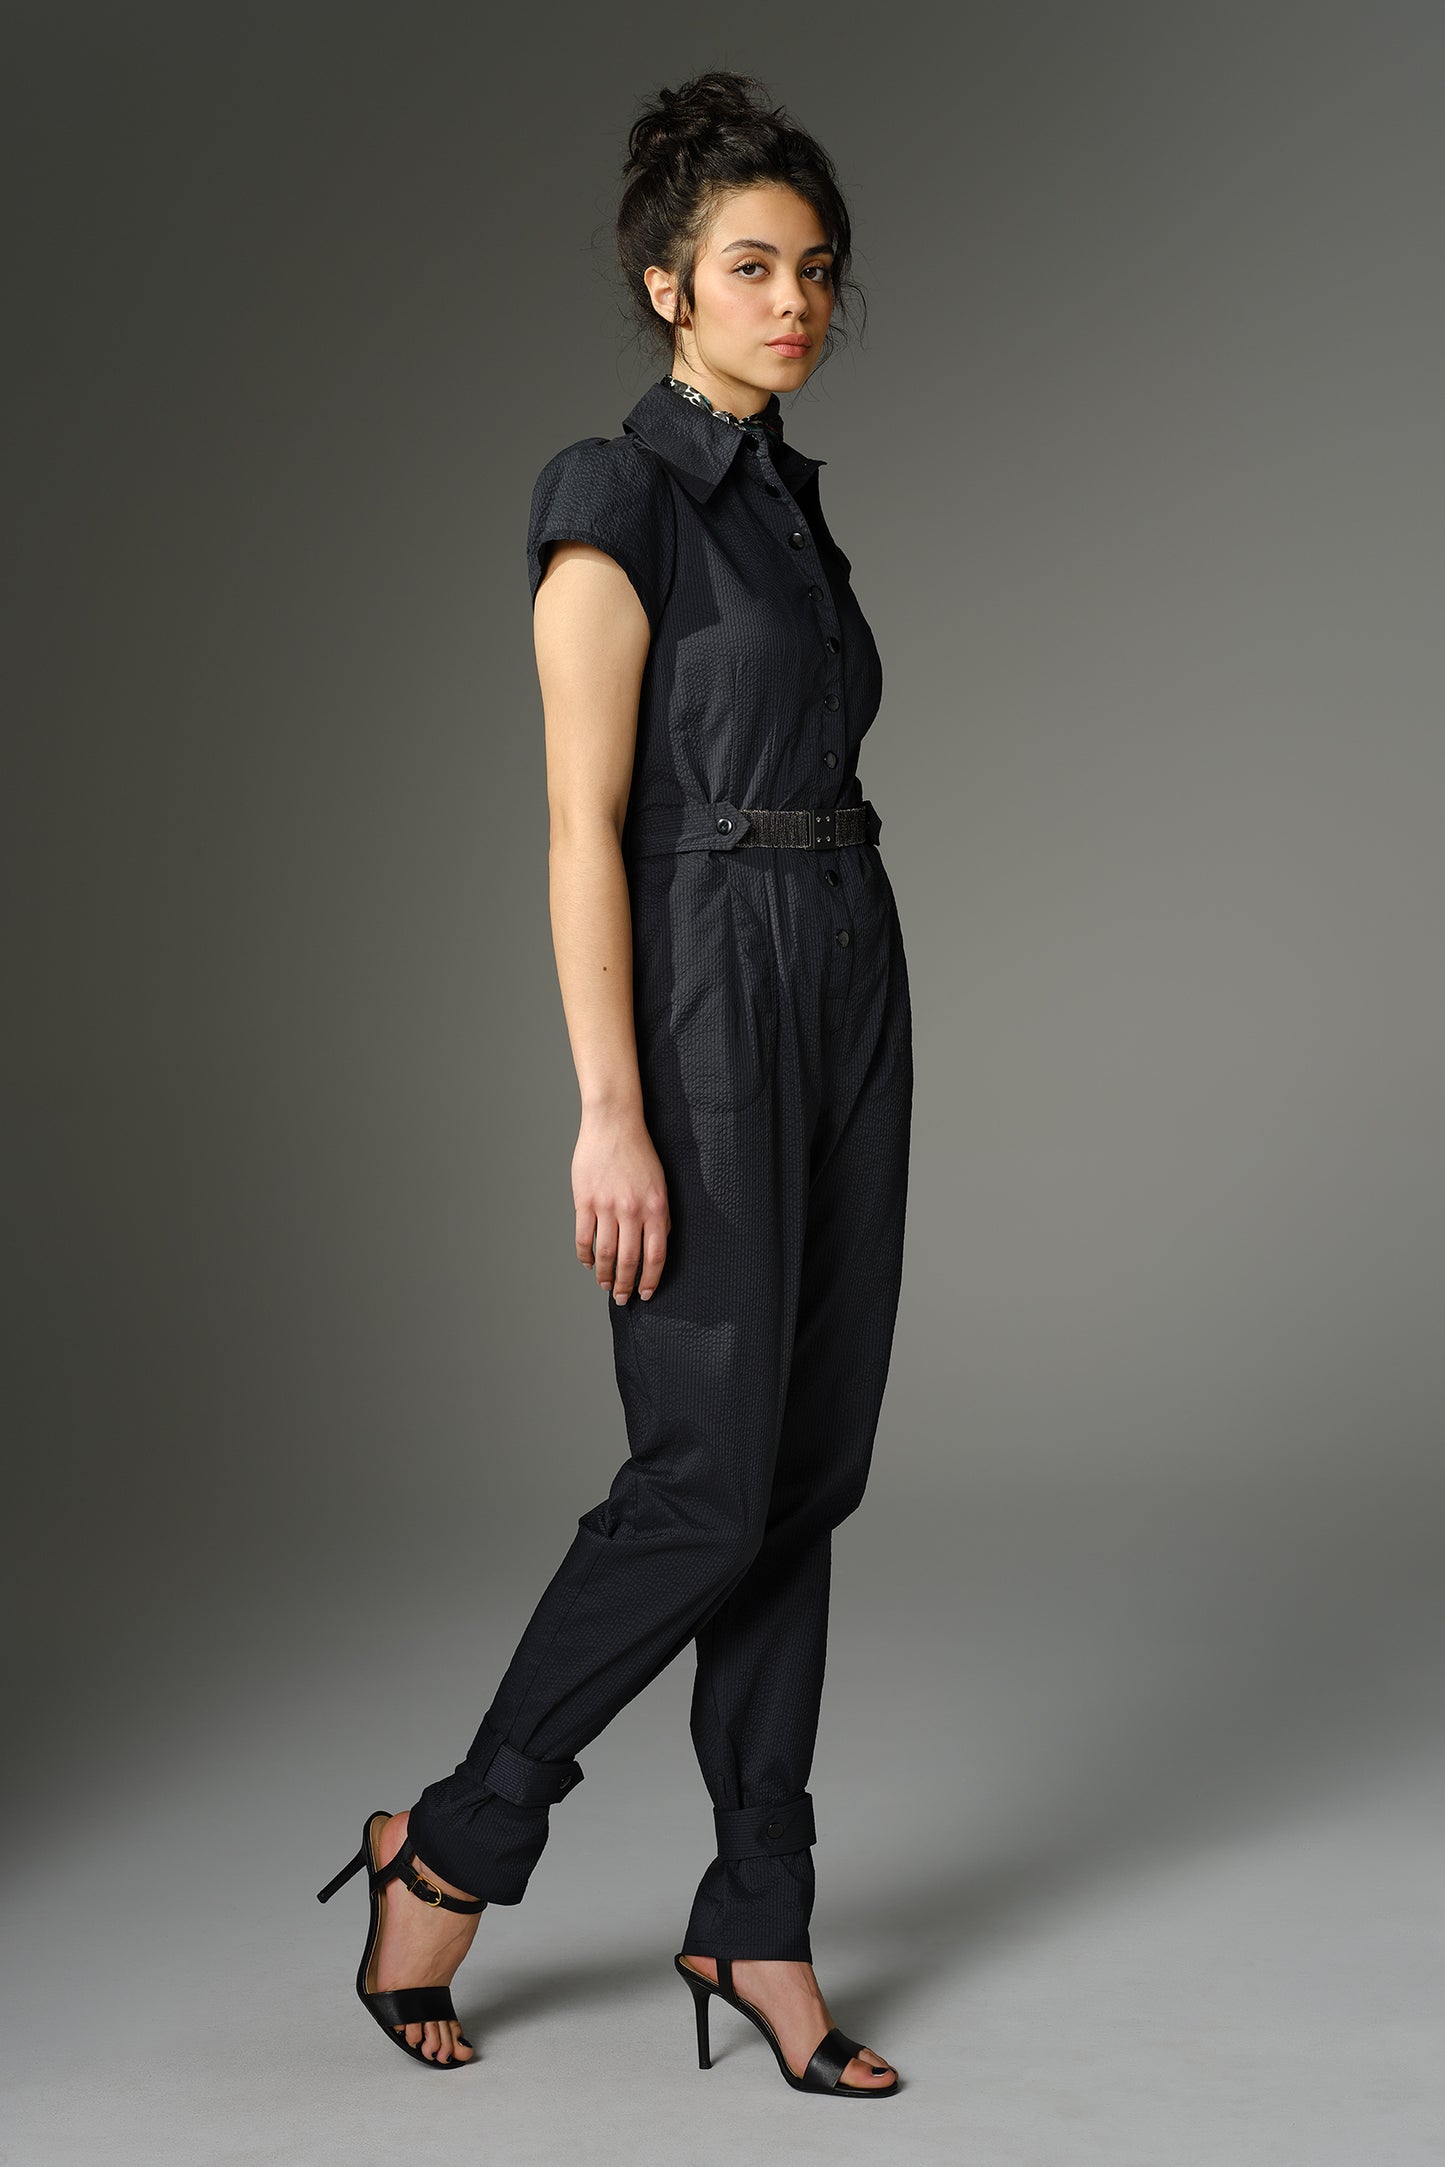 THE WOOLF Jumpsuit - Short Sleeve in Black Japanese Seersucker